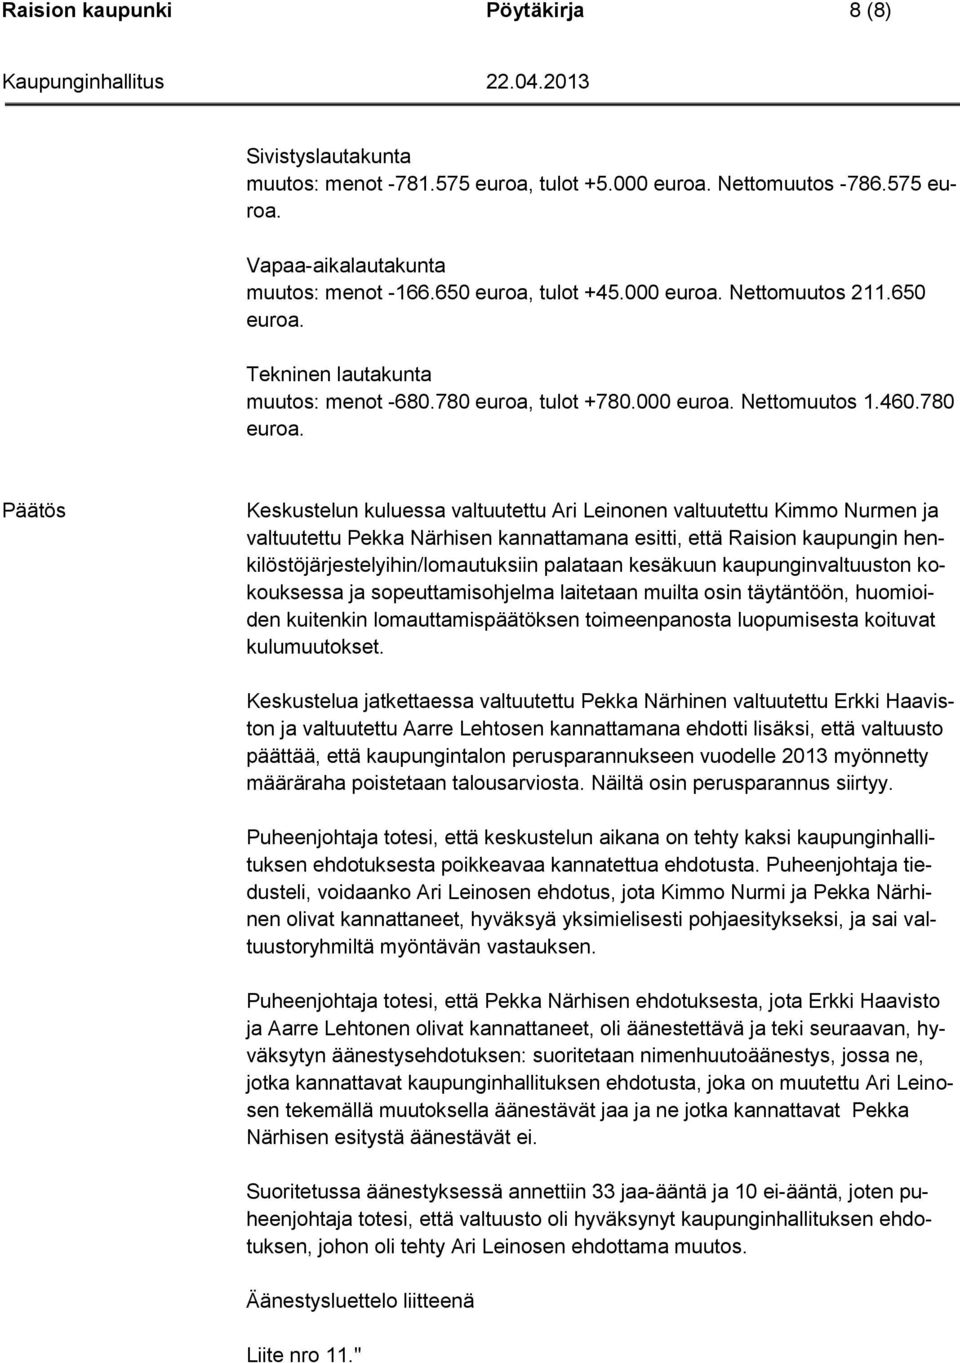 780 Päätös Keskustelun kuluessa valtuutettu Ari Leinonen valtuutettu Kimmo Nurmen ja valtuutettu Pekka Närhisen kannattamana esitti, että Raision kaupungin henkilöstöjärjestelyihin/lomautuksiin